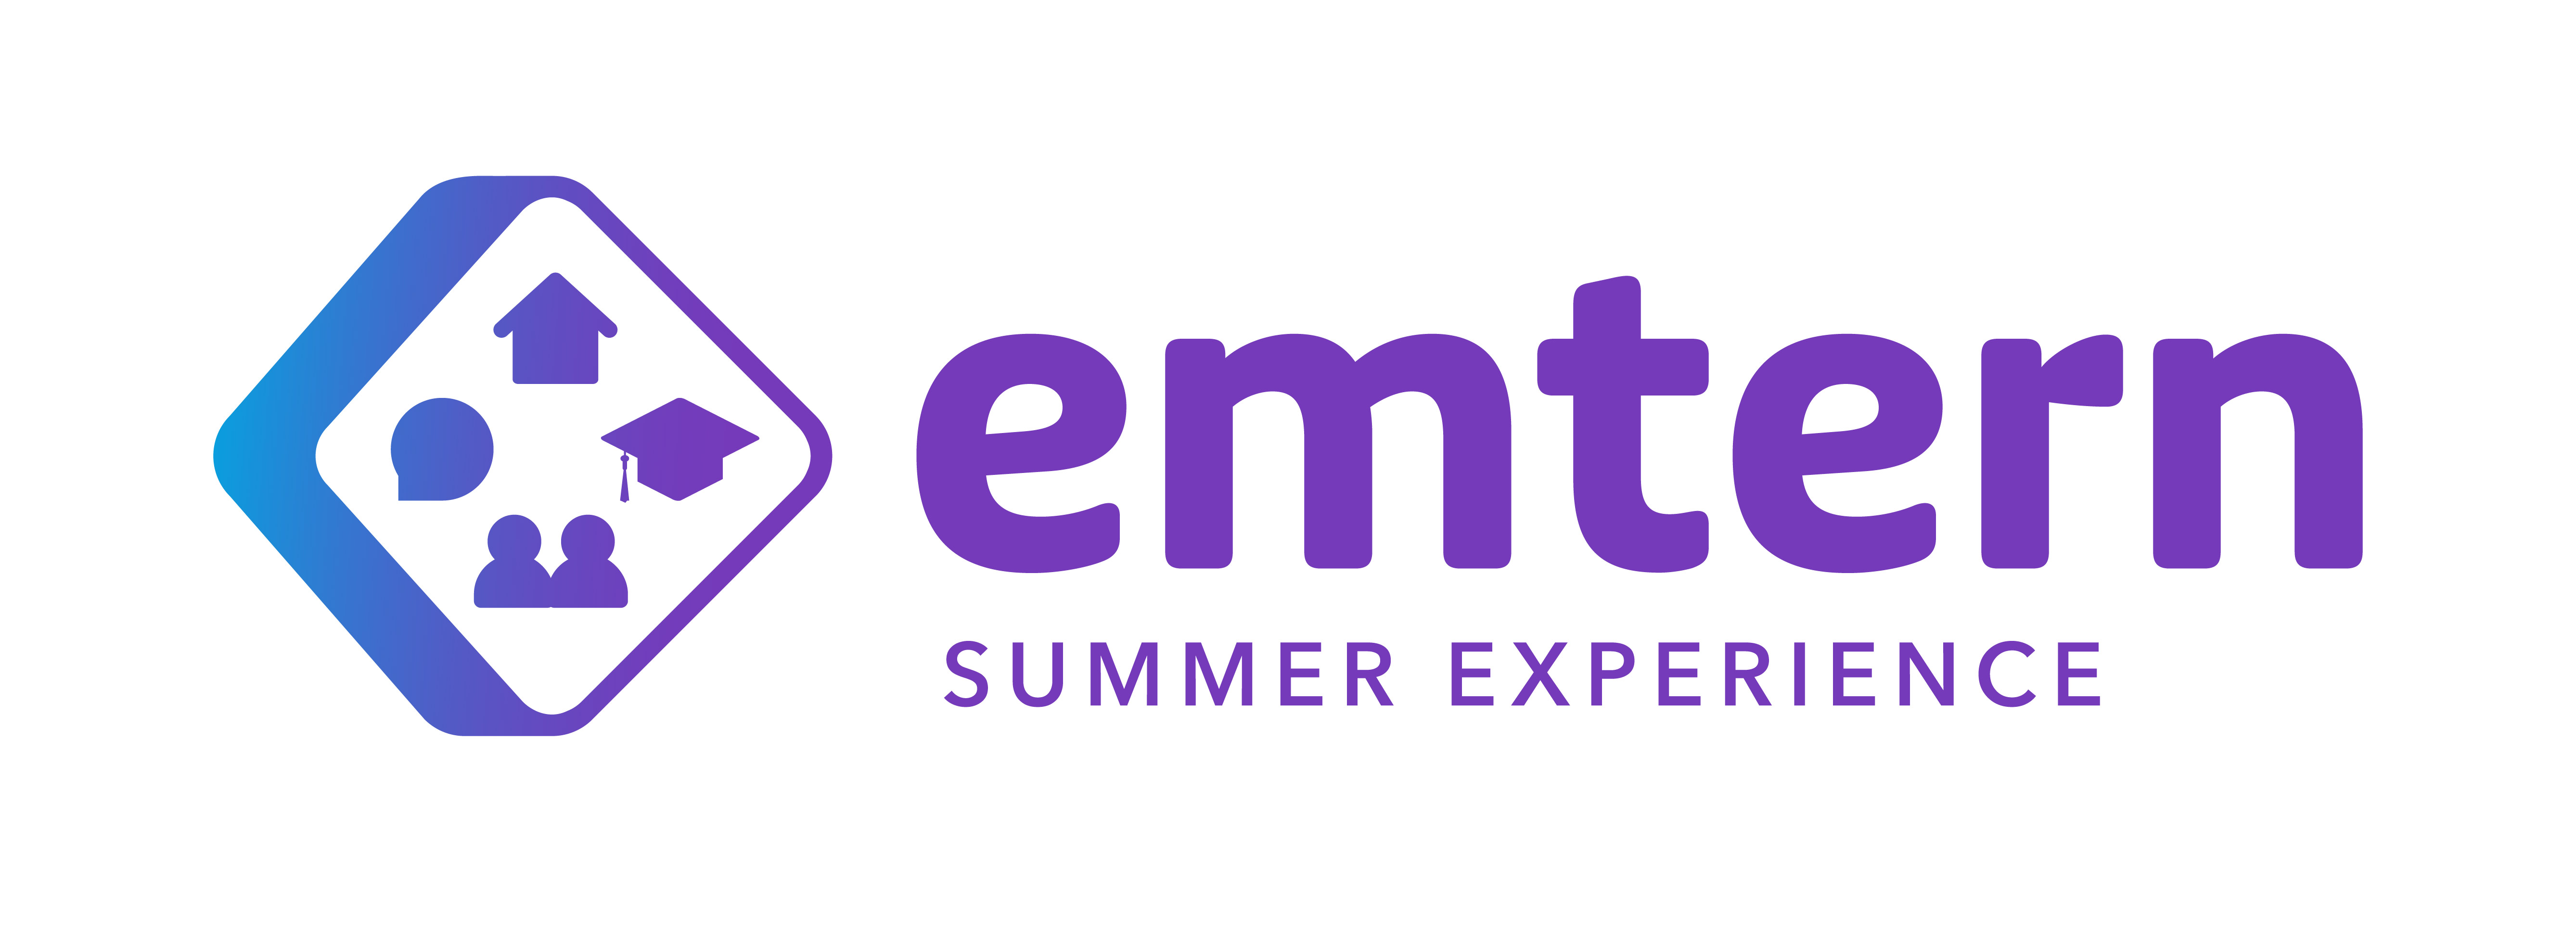 Emtern Summer Experience Logo